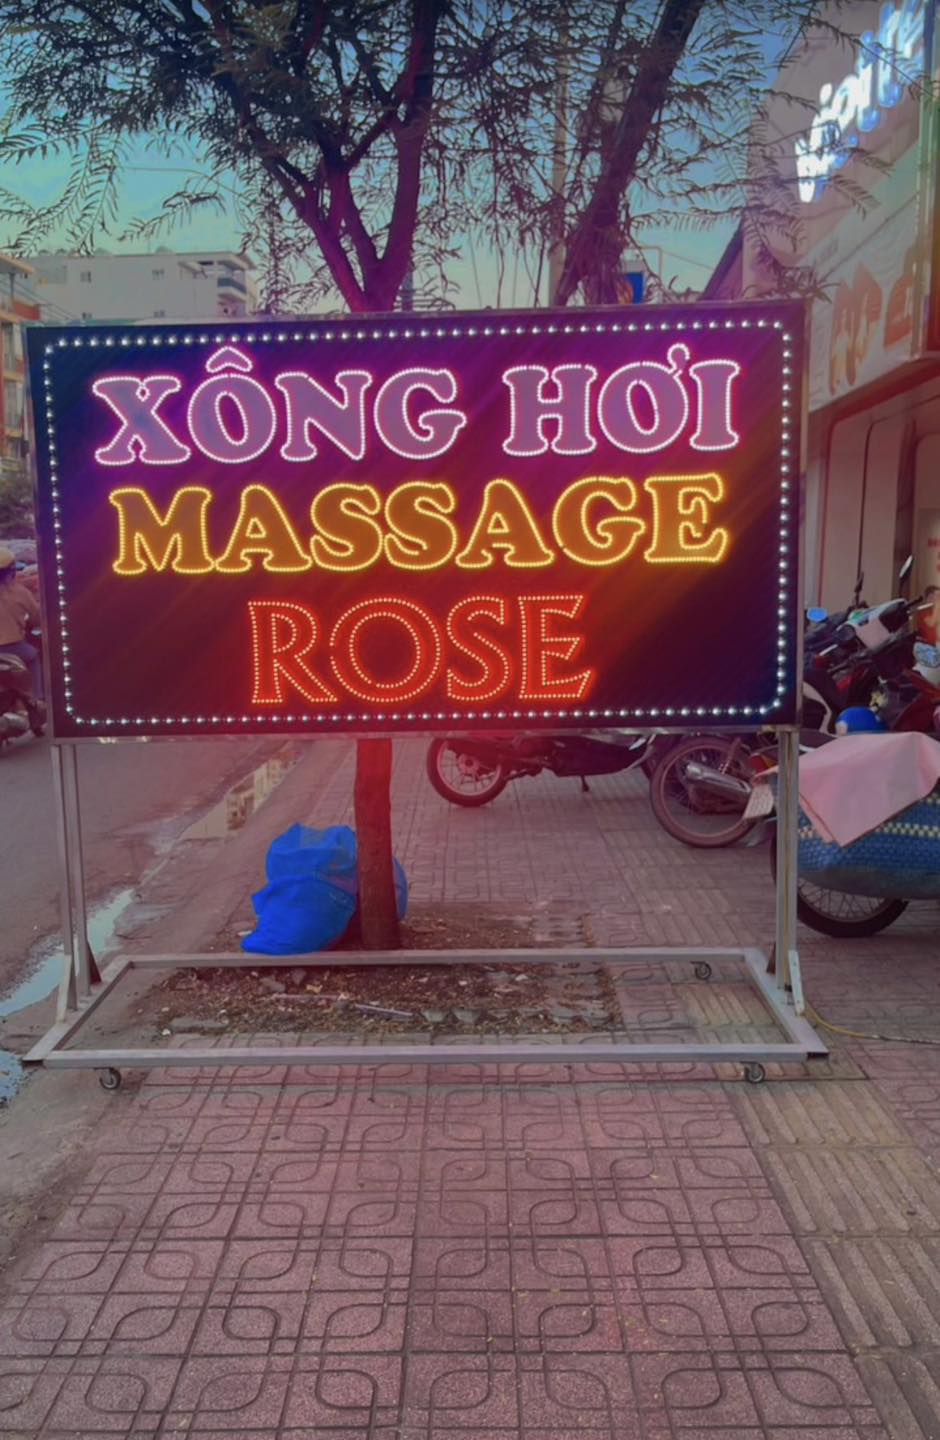 Massage Rose